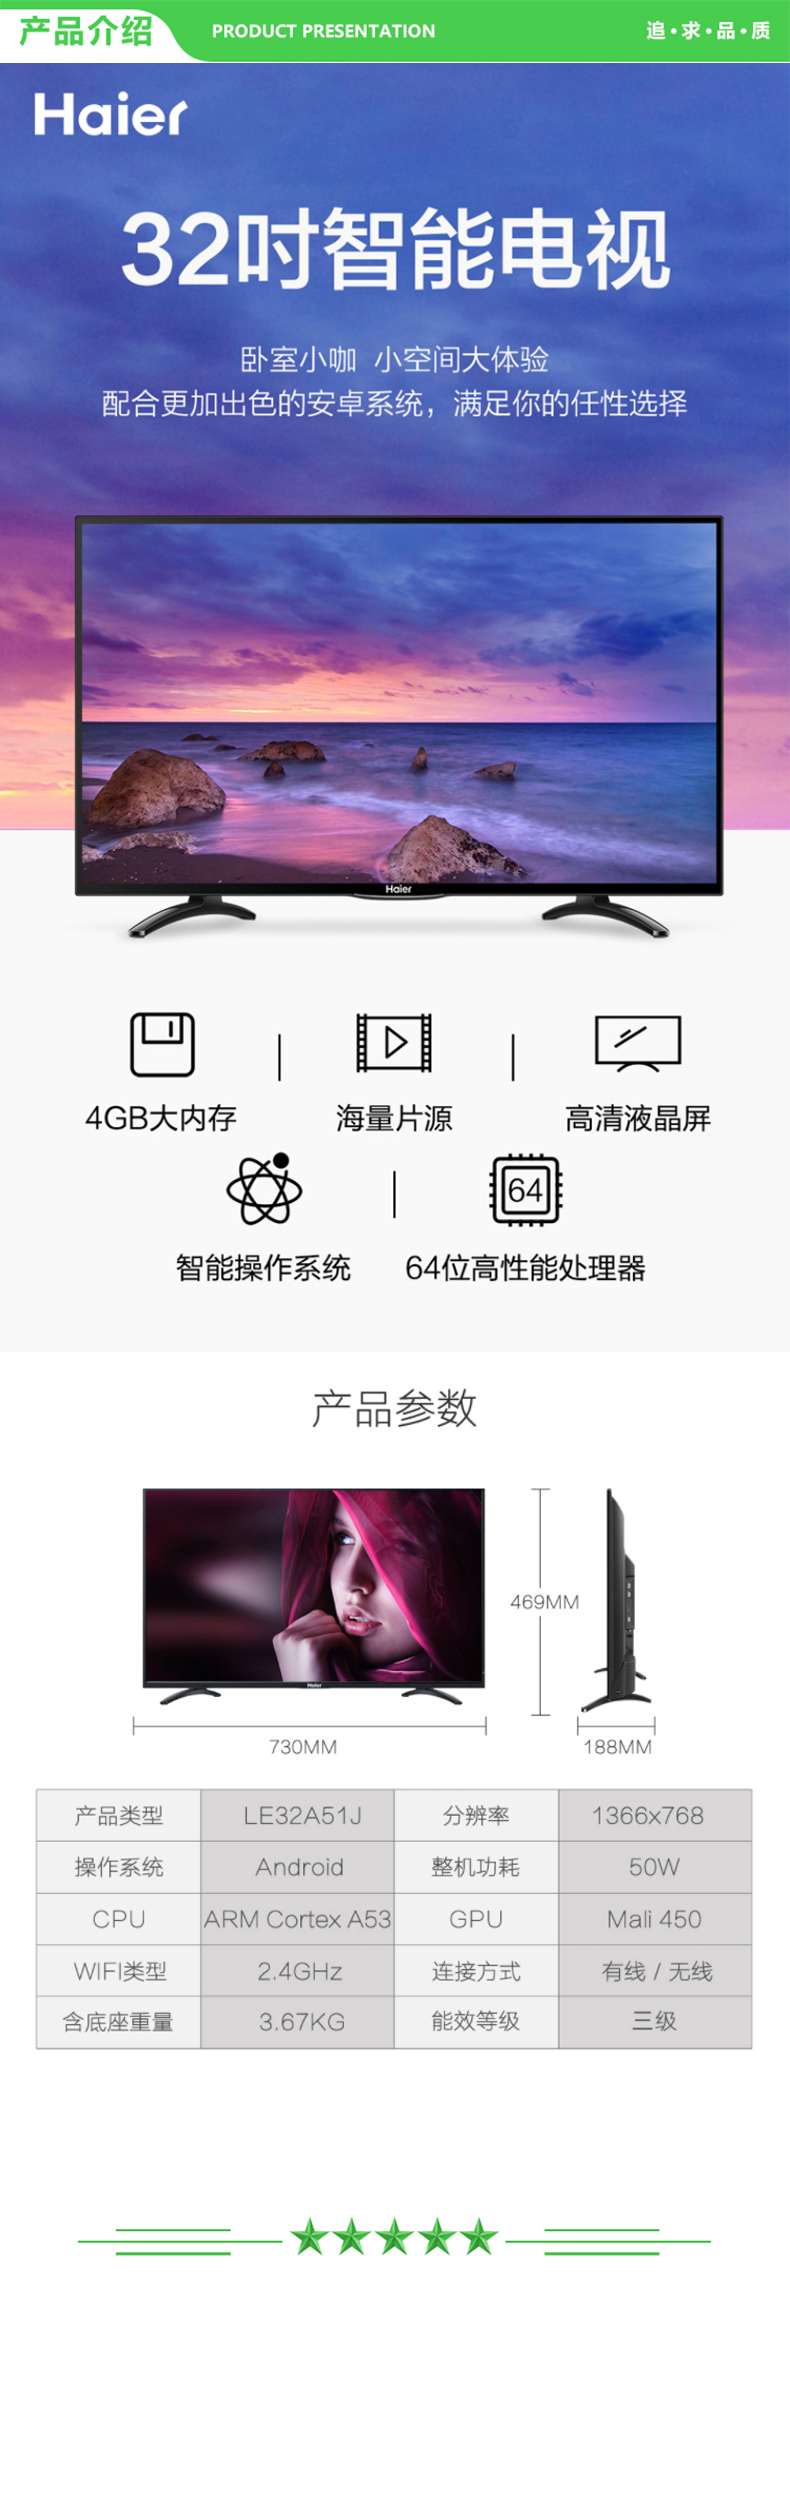 海尔 Haier LE32A51J 32英寸 智能网络WiFi高清LED液晶平板电视（黑色） .jpg